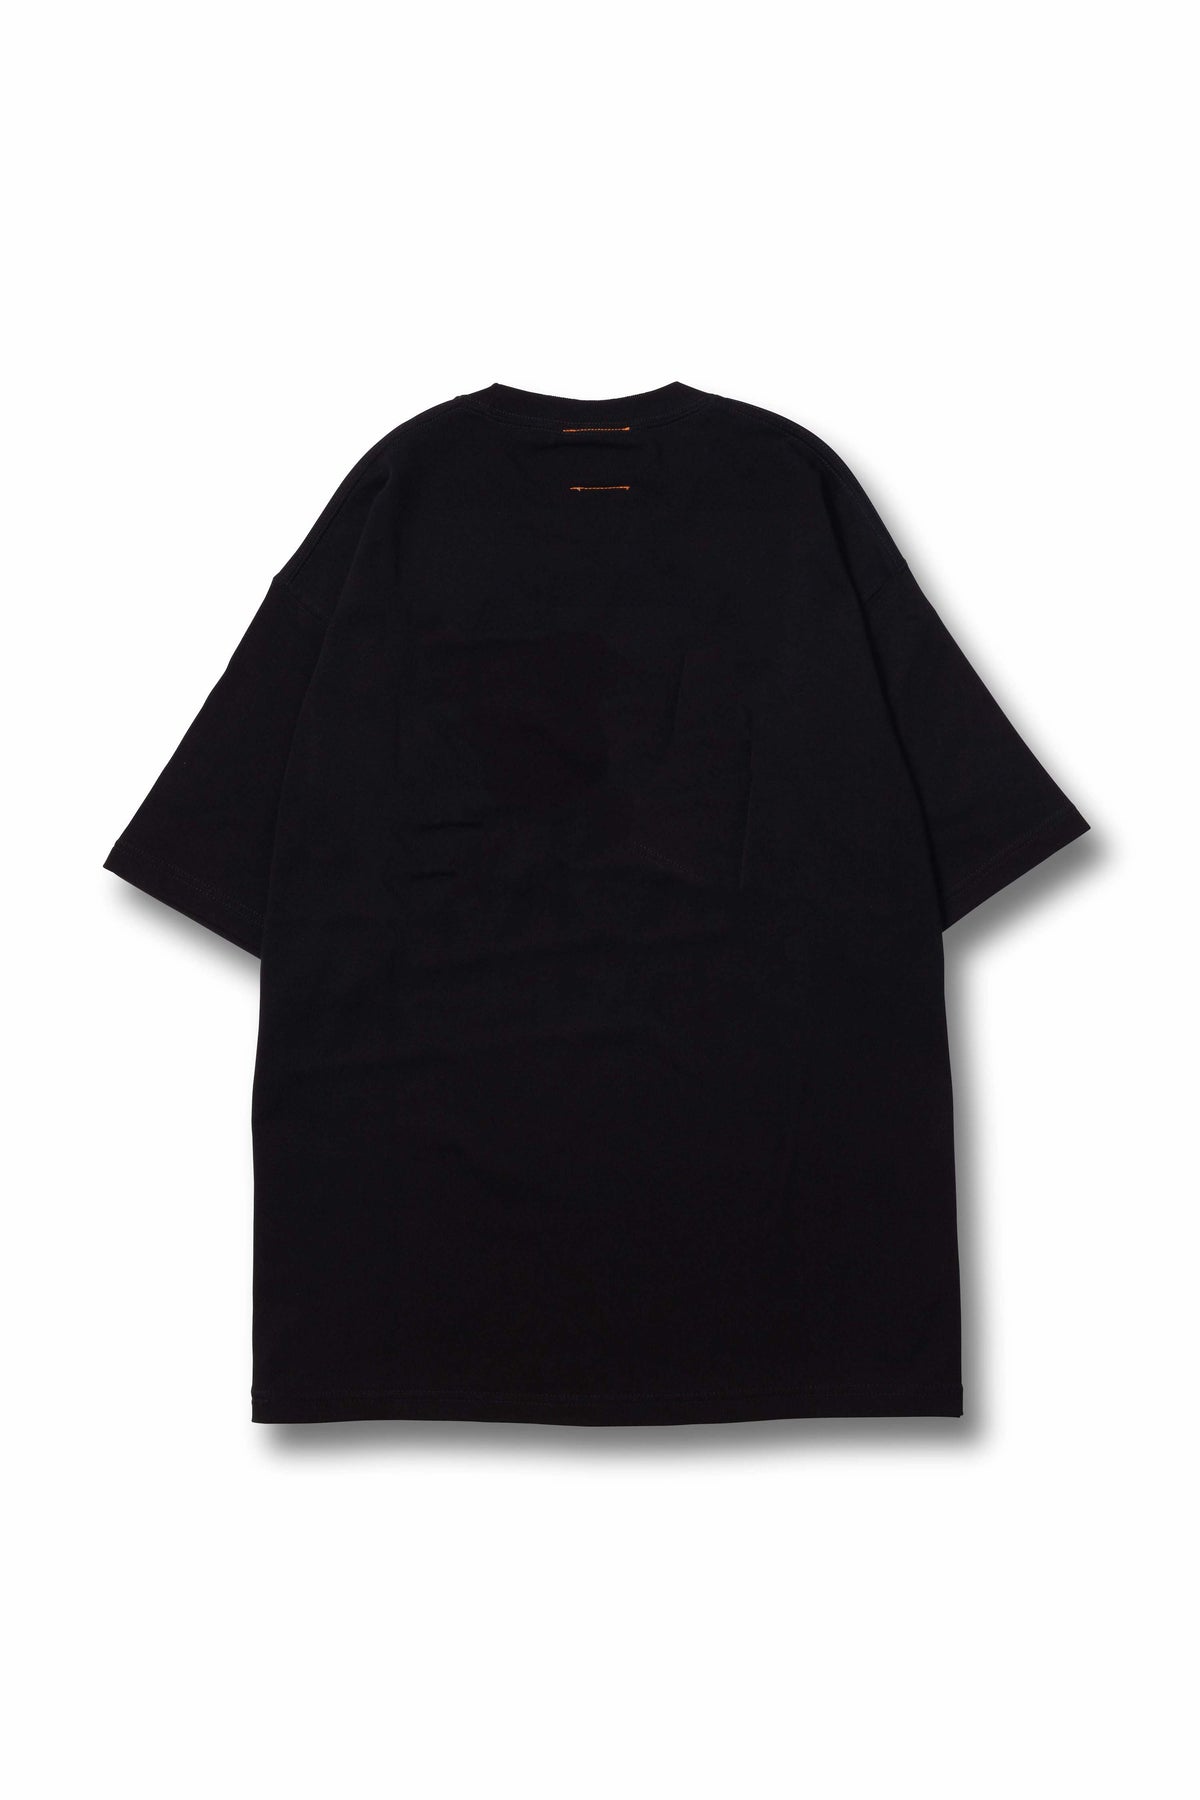 セットアップ FF14 【Lサイズ】vaultroom SABOTENDER BLK TEE Tシャツ 